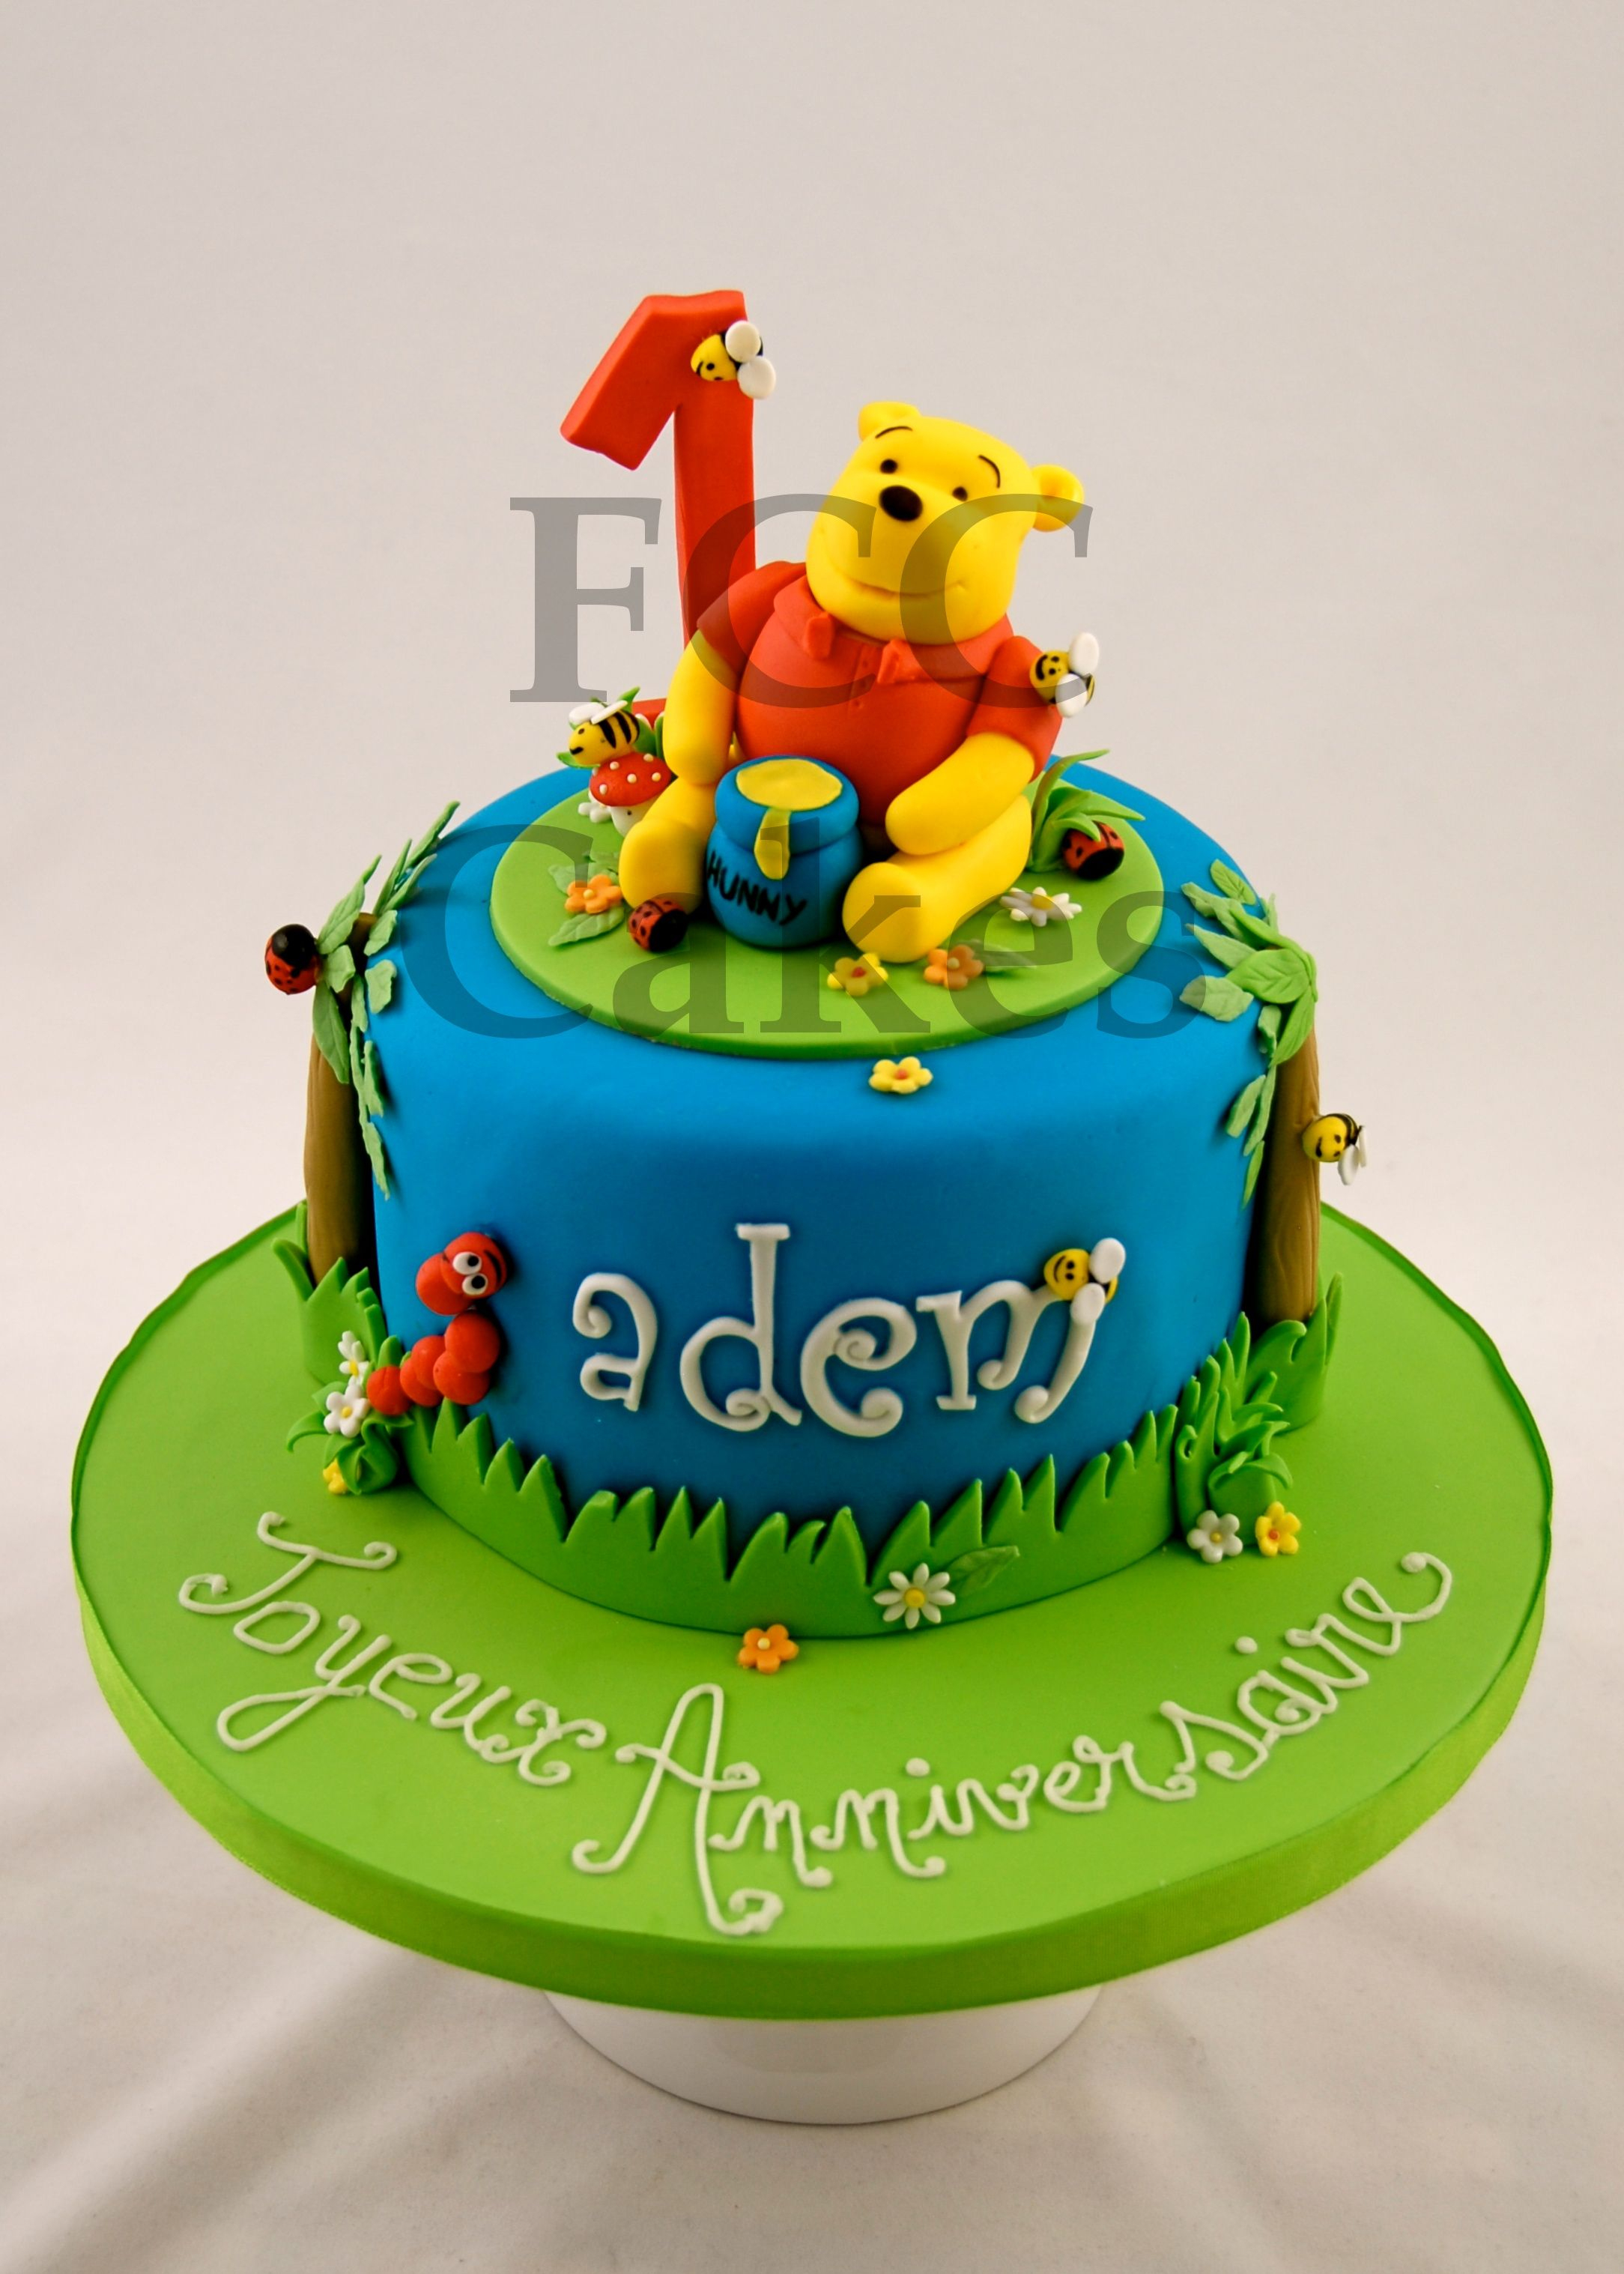 Childrens Birthday Cake - Gateau D'anniversaire Pour Enfants intérieur Gateau Anniversaire Winnie L Ourson